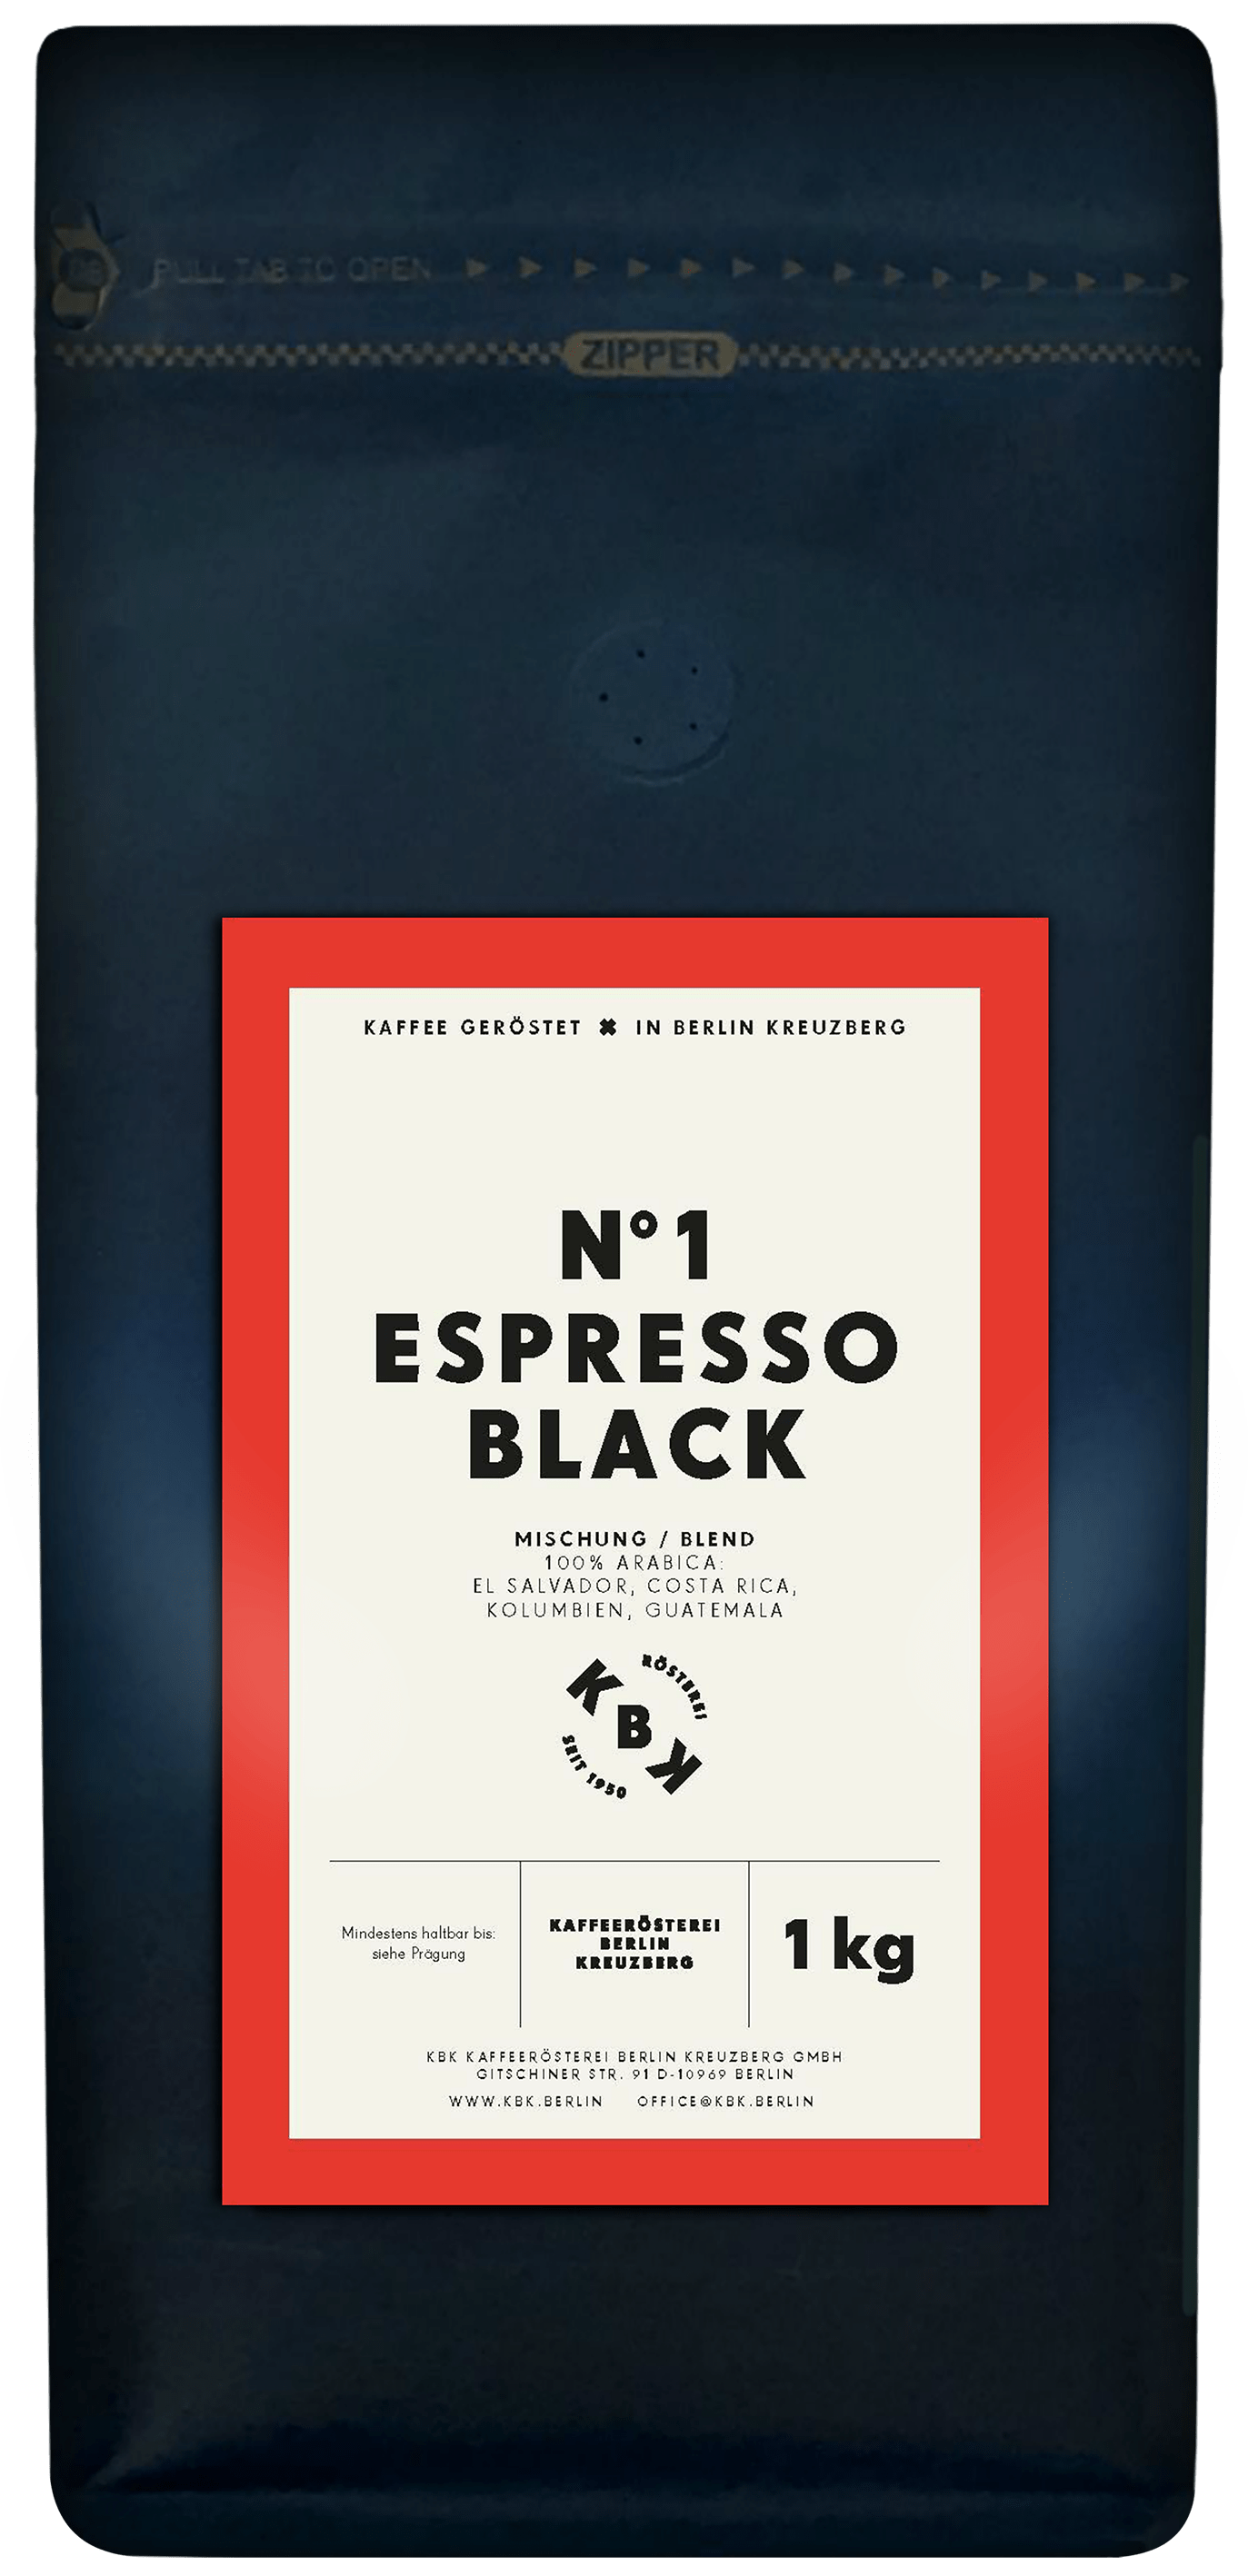 N°1 Espresso Black